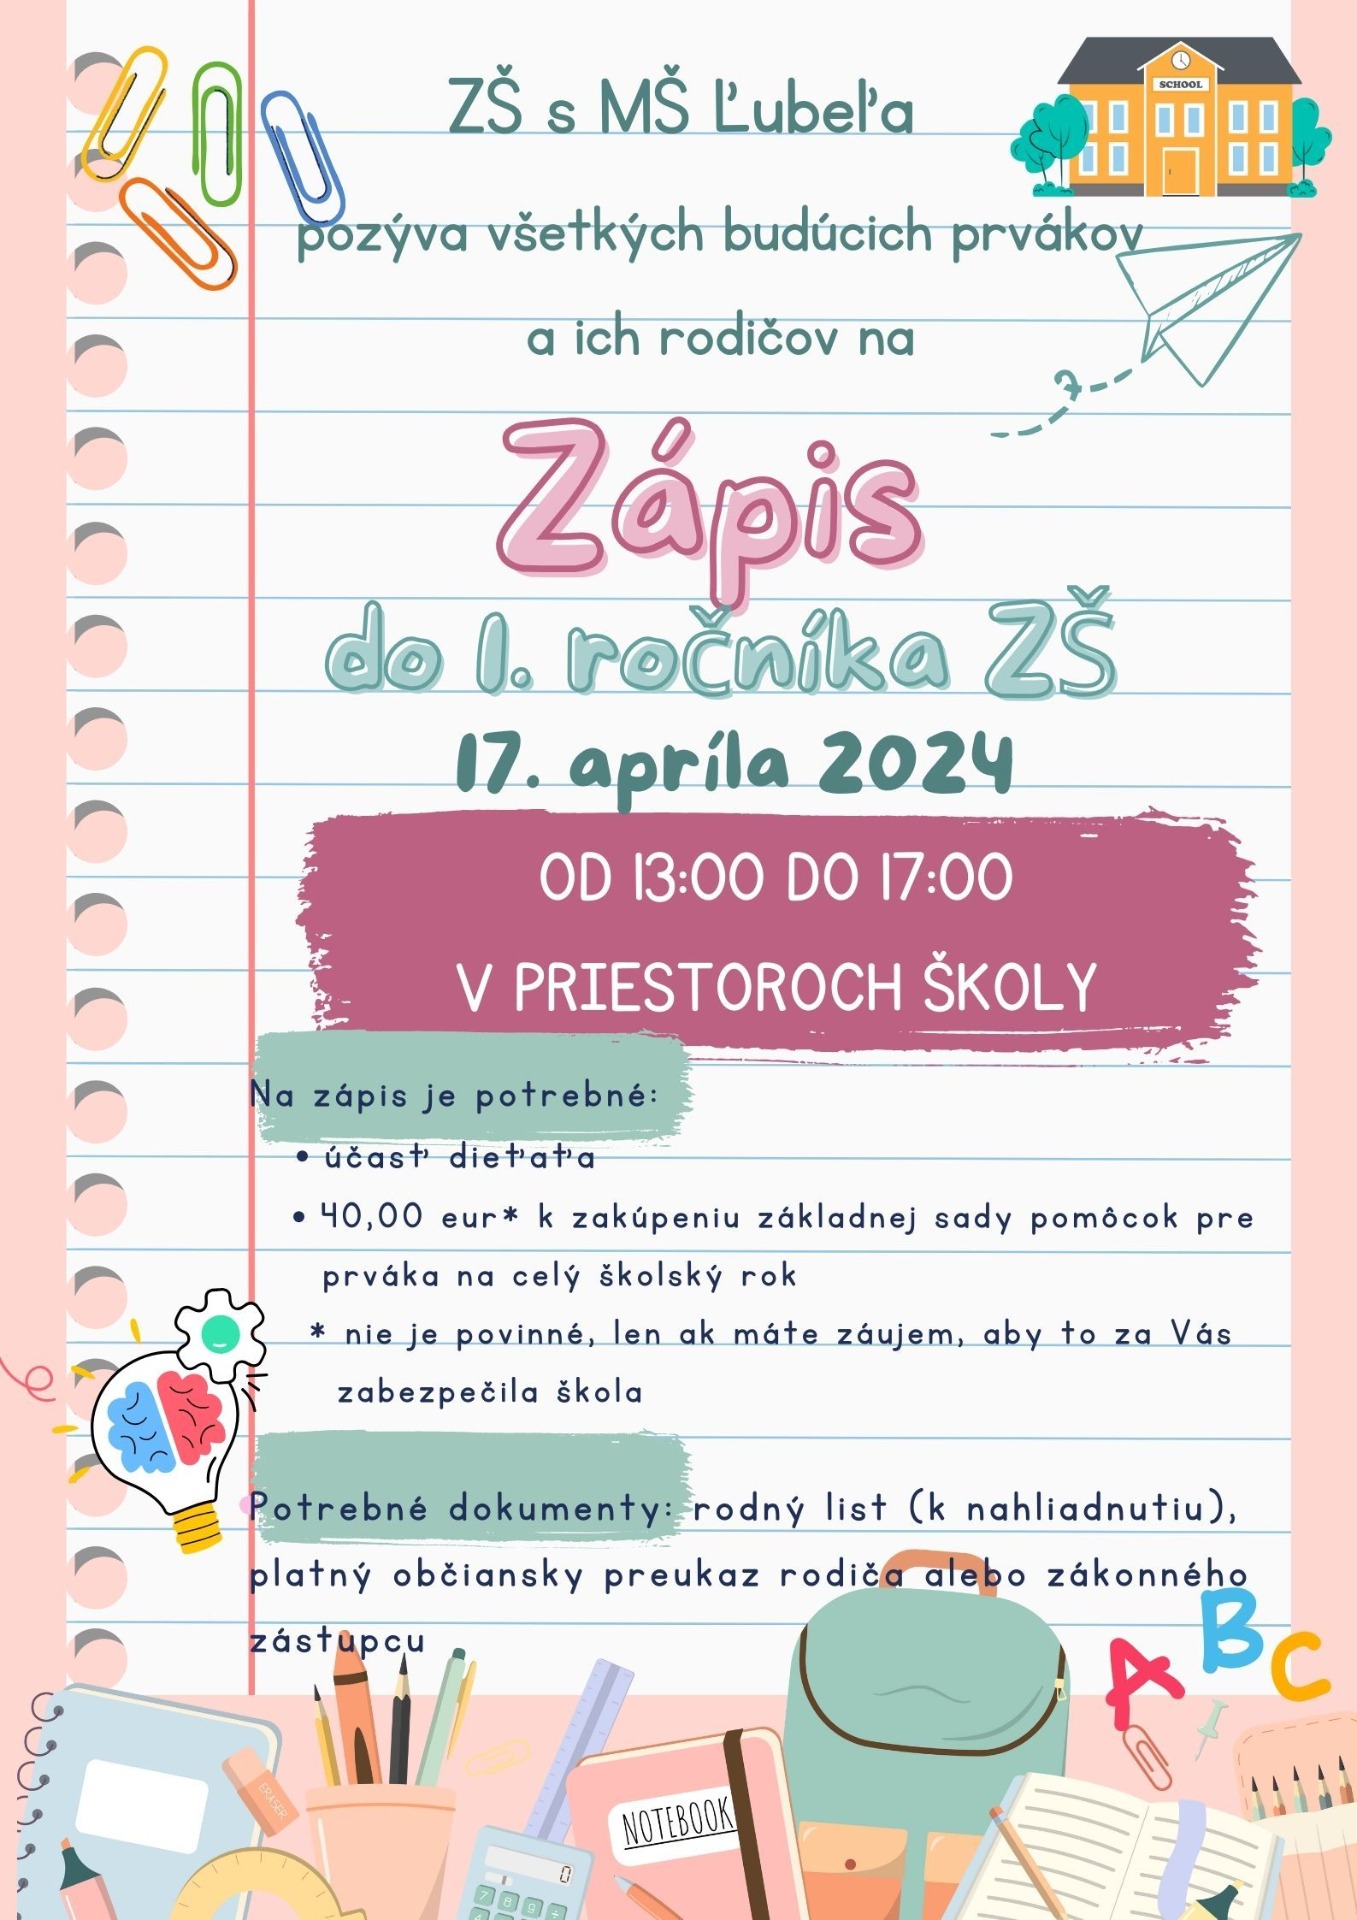 Zápis do 1. ročníka ZŠ pre šk. rok 2024/2025 - Obrázok 1